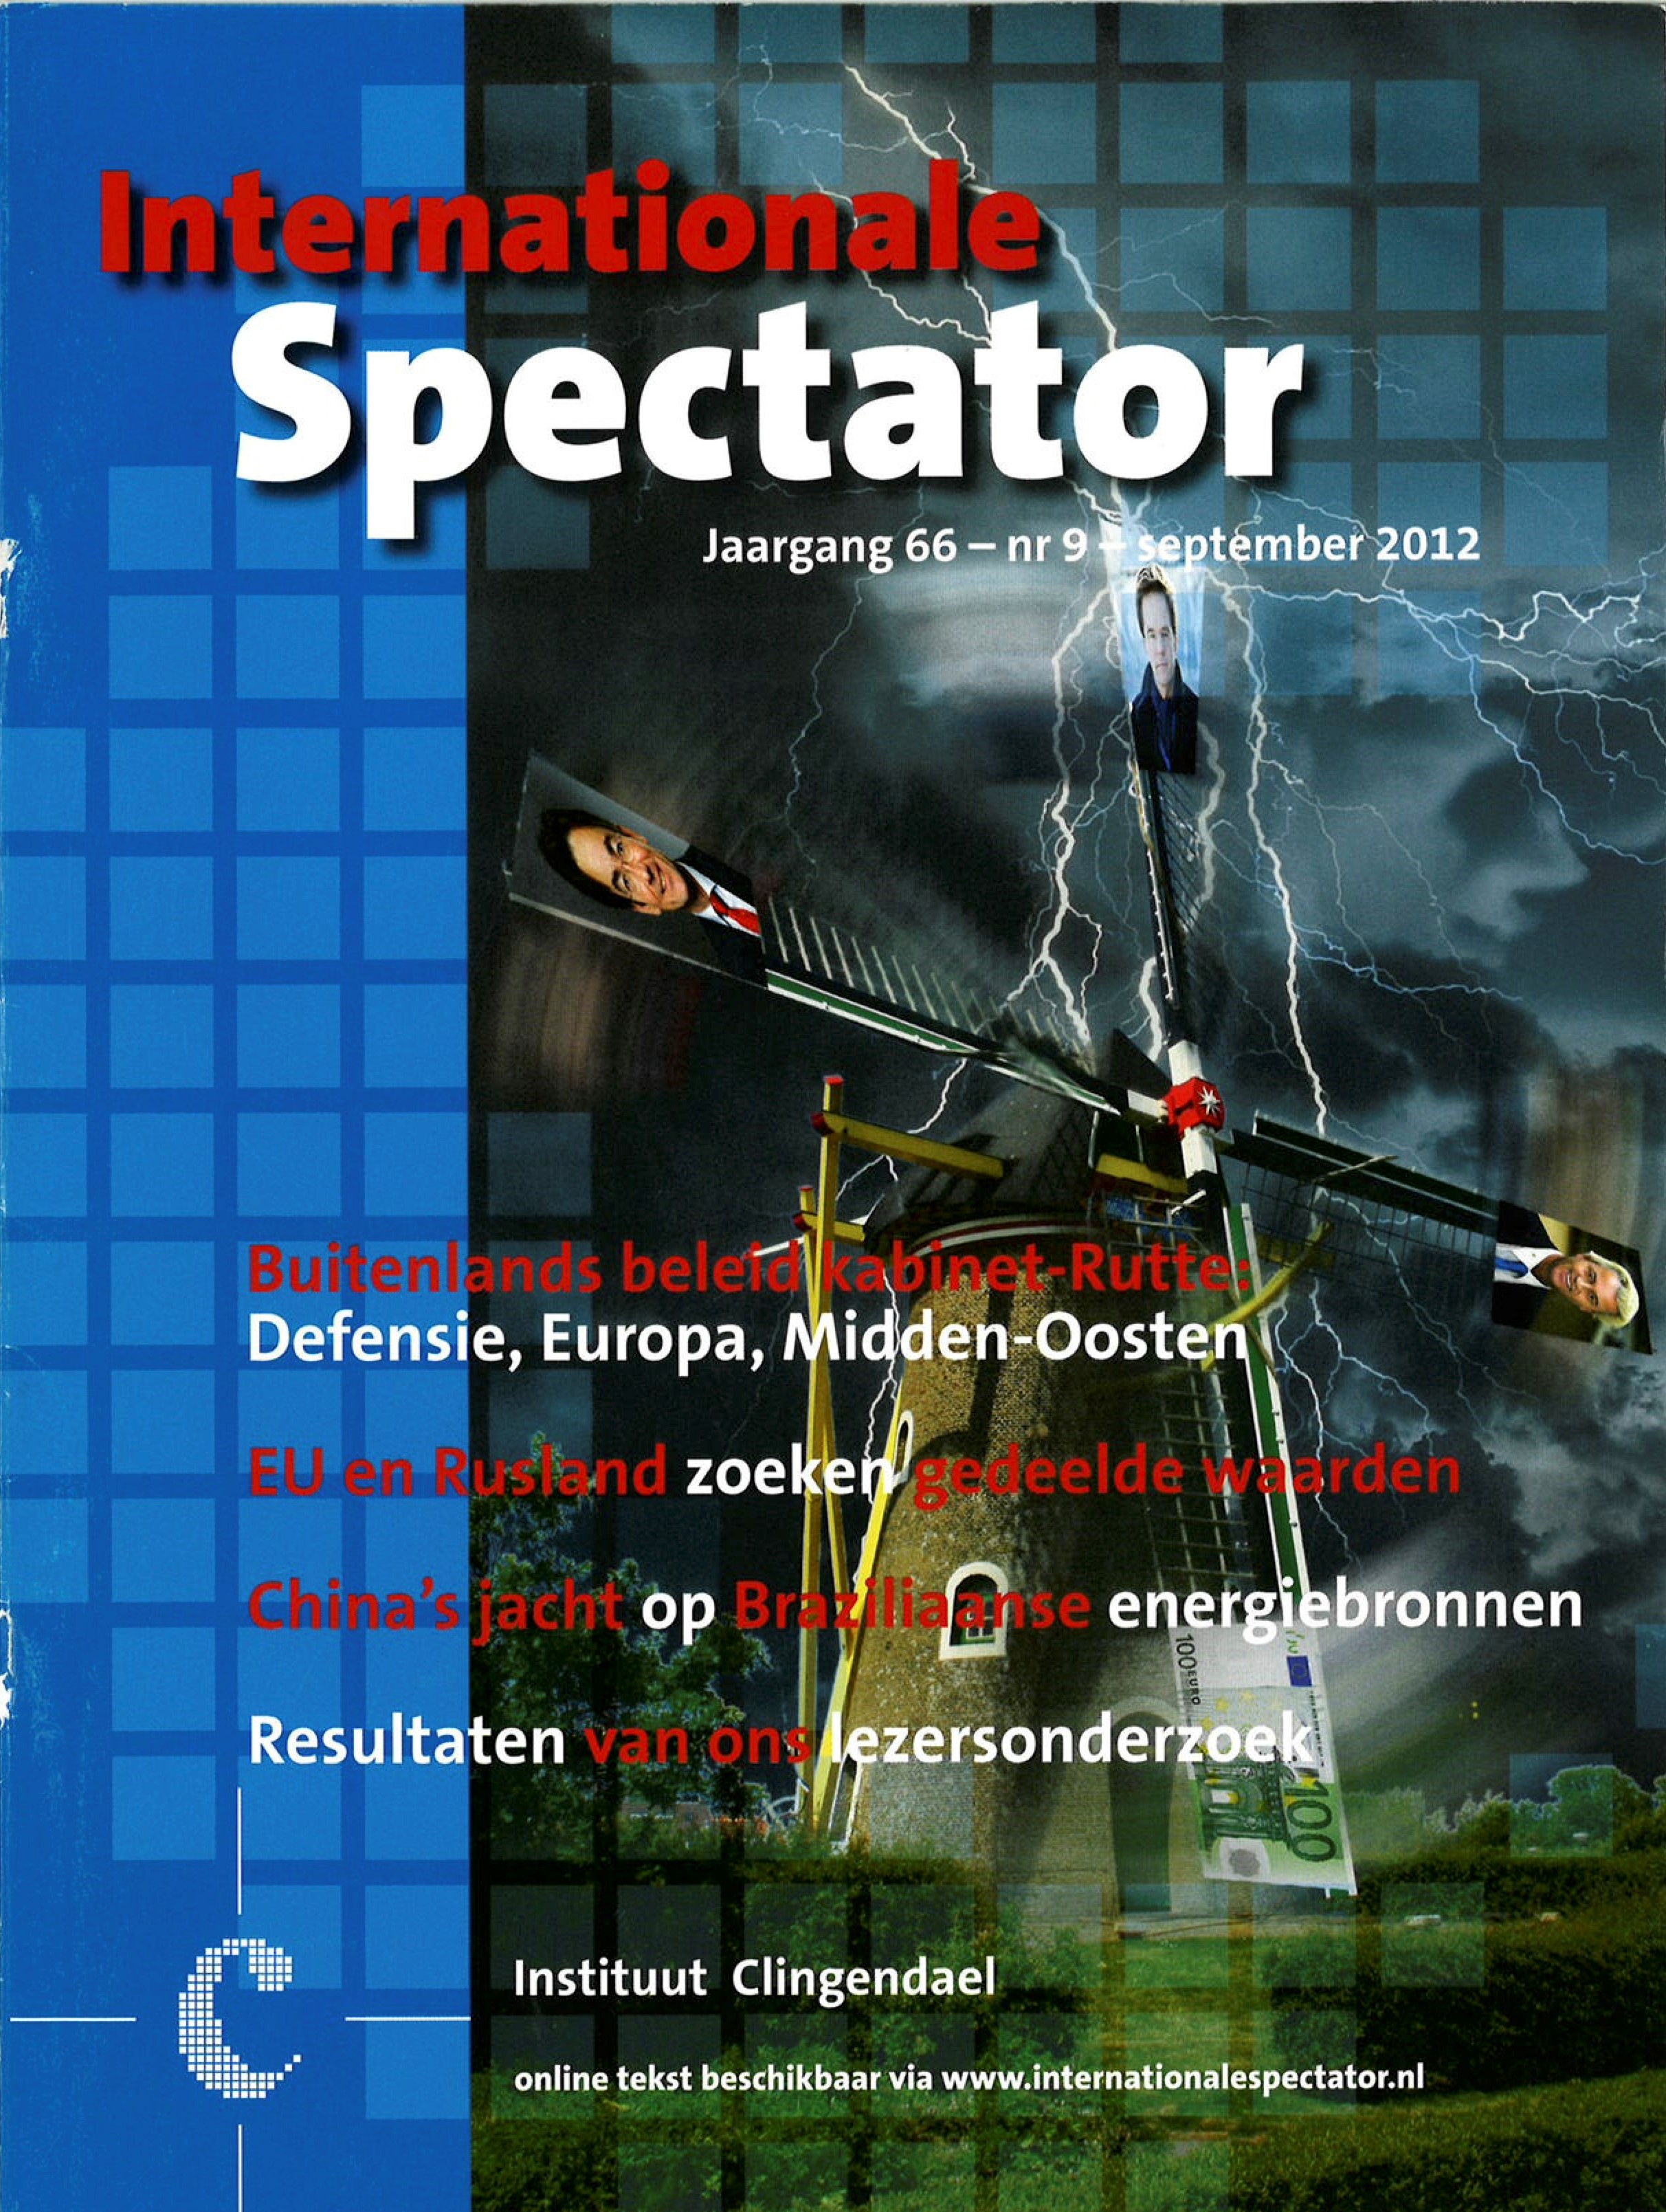 Cover van de Internationale Spectator in 2012.